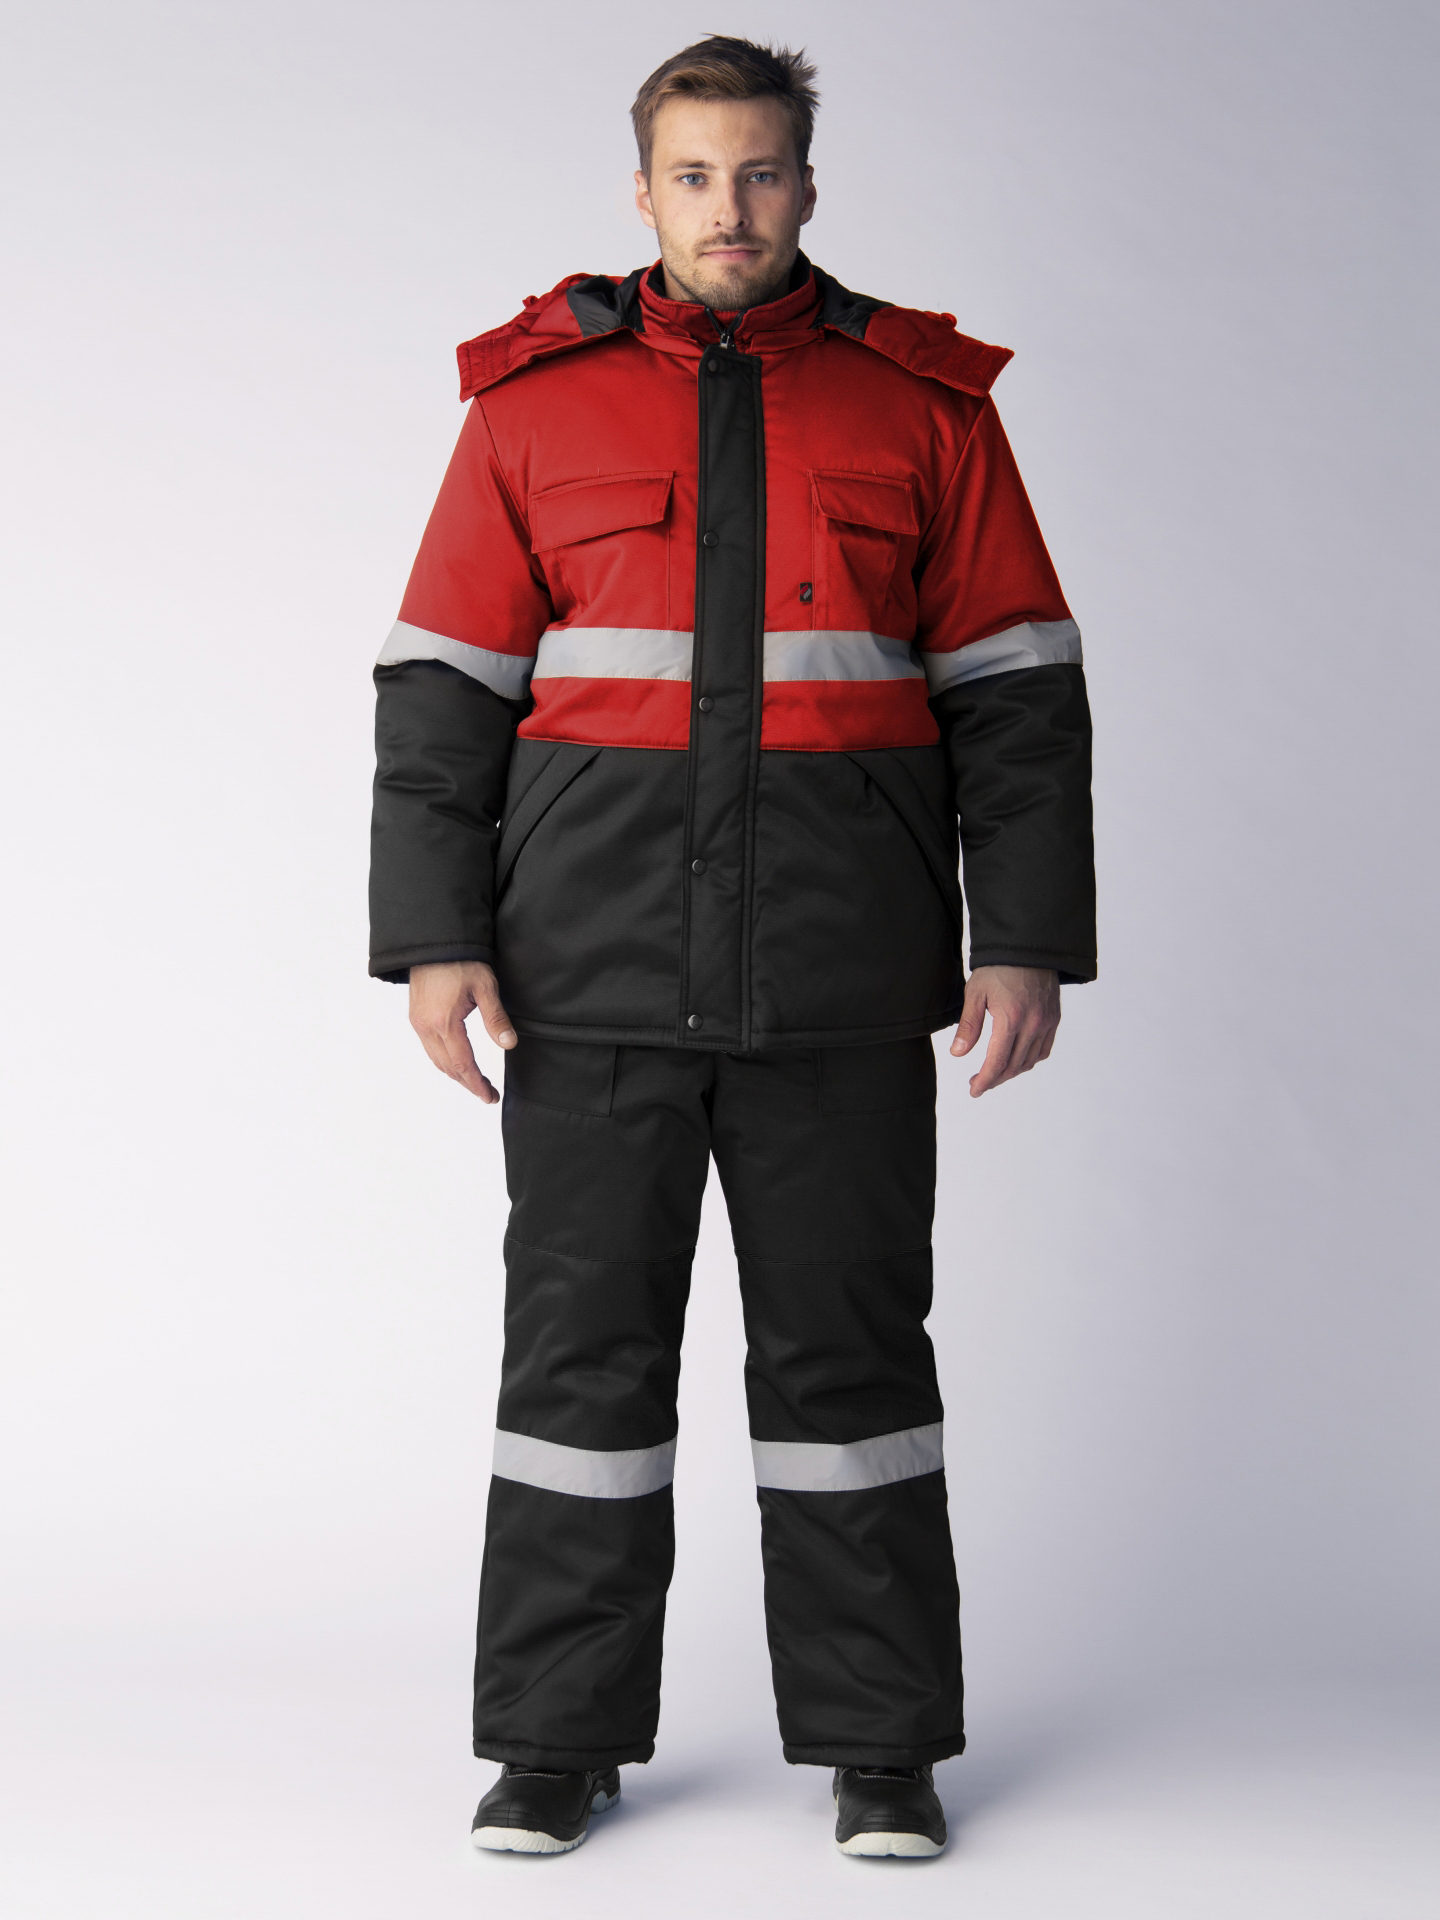 Зимний костюм "ПРОФИ-НОРД" мужской, утепленный (куртка и полукомбинезон), цвет: черный с красным, ткань: смесовая